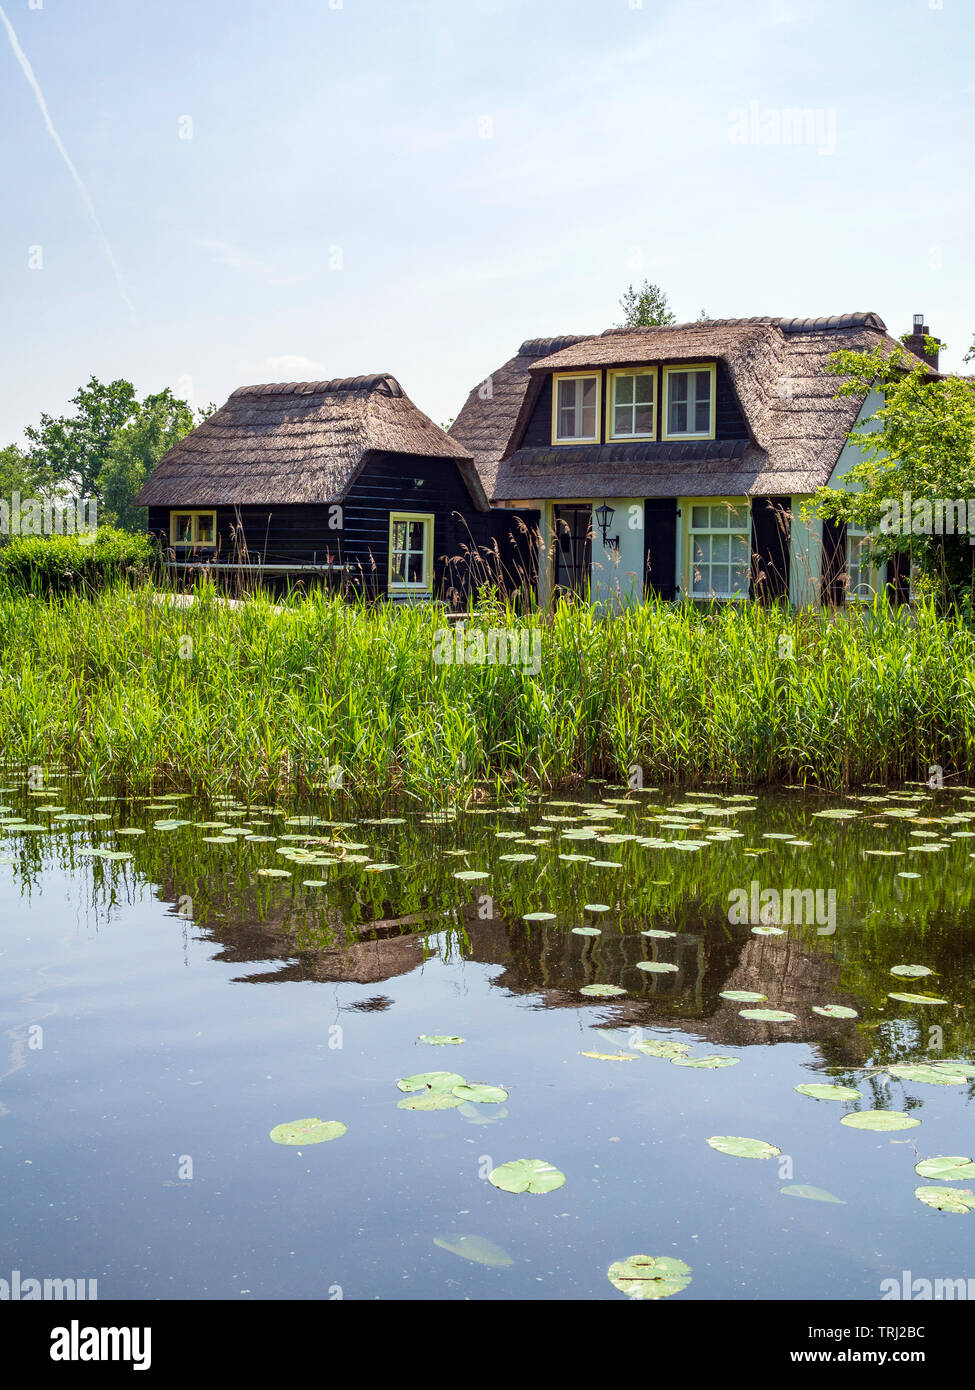 Una casa in stile tradizionale sul lago "Ankeveense Plassen', creato da torba raccolta, in Ankeveen, Paesi Bassi. Foto Stock